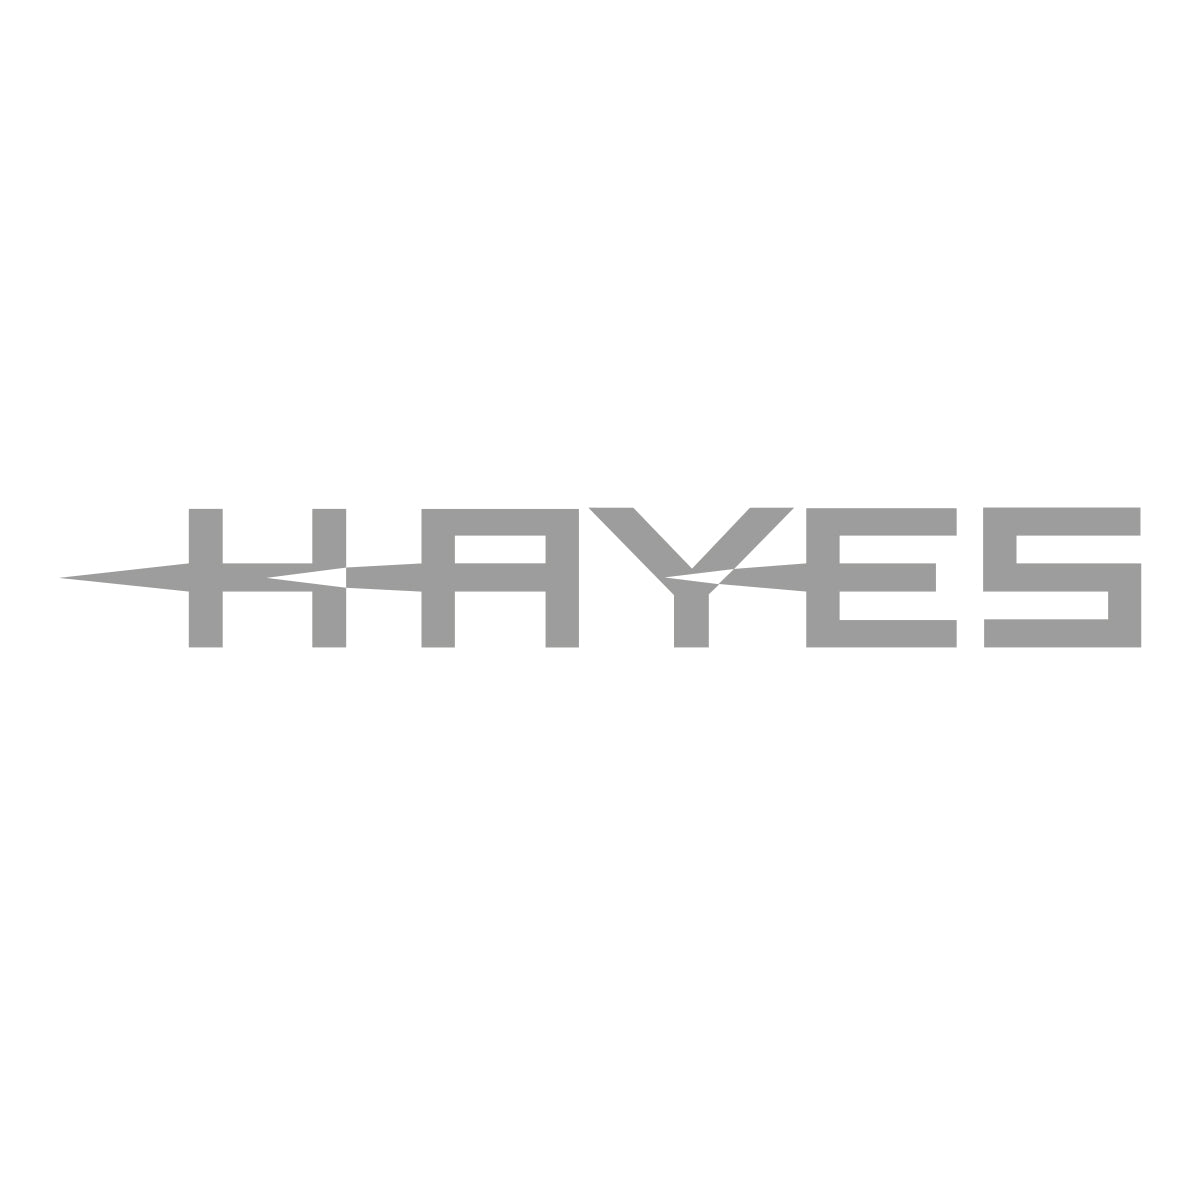 Hayes HFX-9 Brake Pads